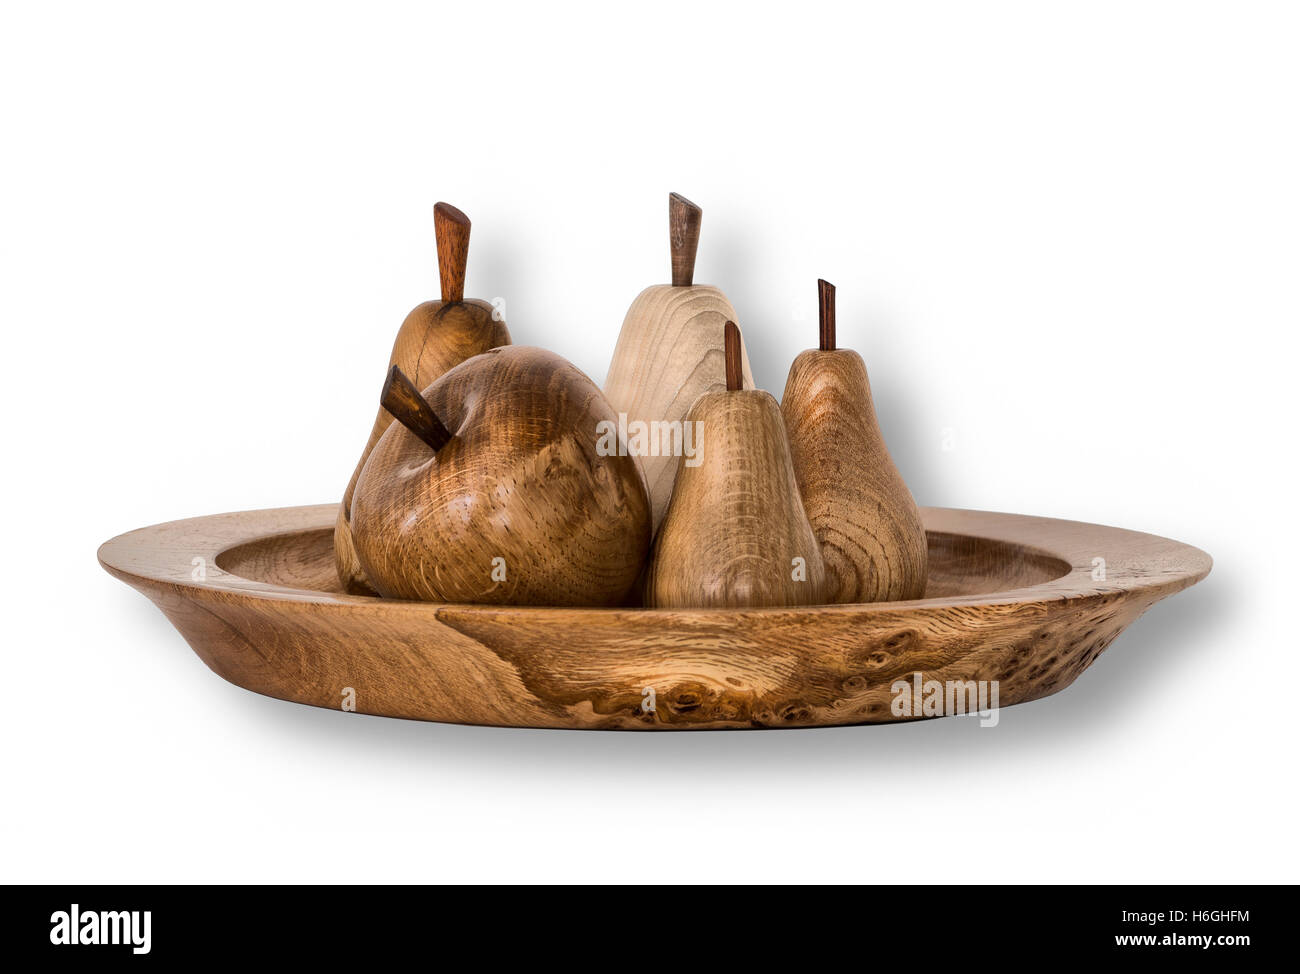 Altamente lucido legno bello girato la mela e la pera frutto in girata ciotola di legno da John Stafford, devon legno-turner Foto Stock